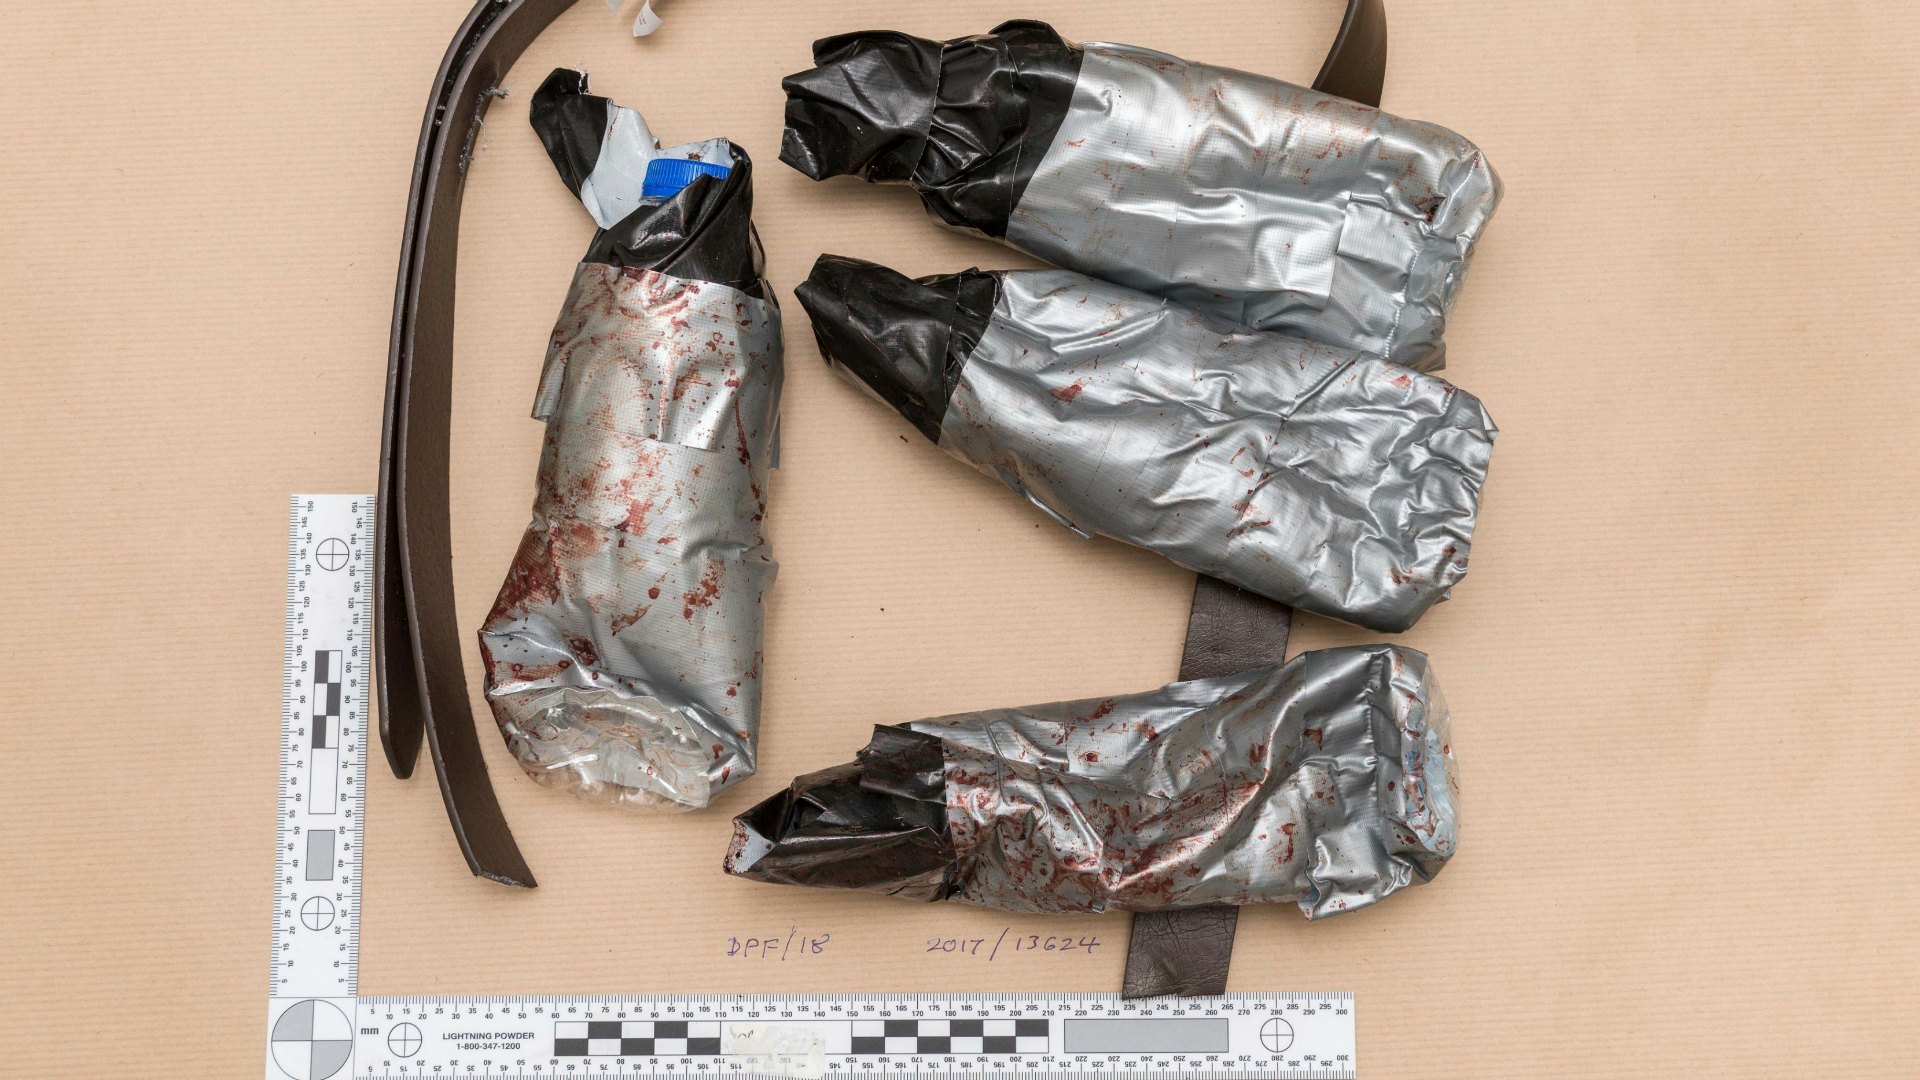 Los terroristas de Londres llevaban cinturones de explosivos falsos para sembrar el pánico